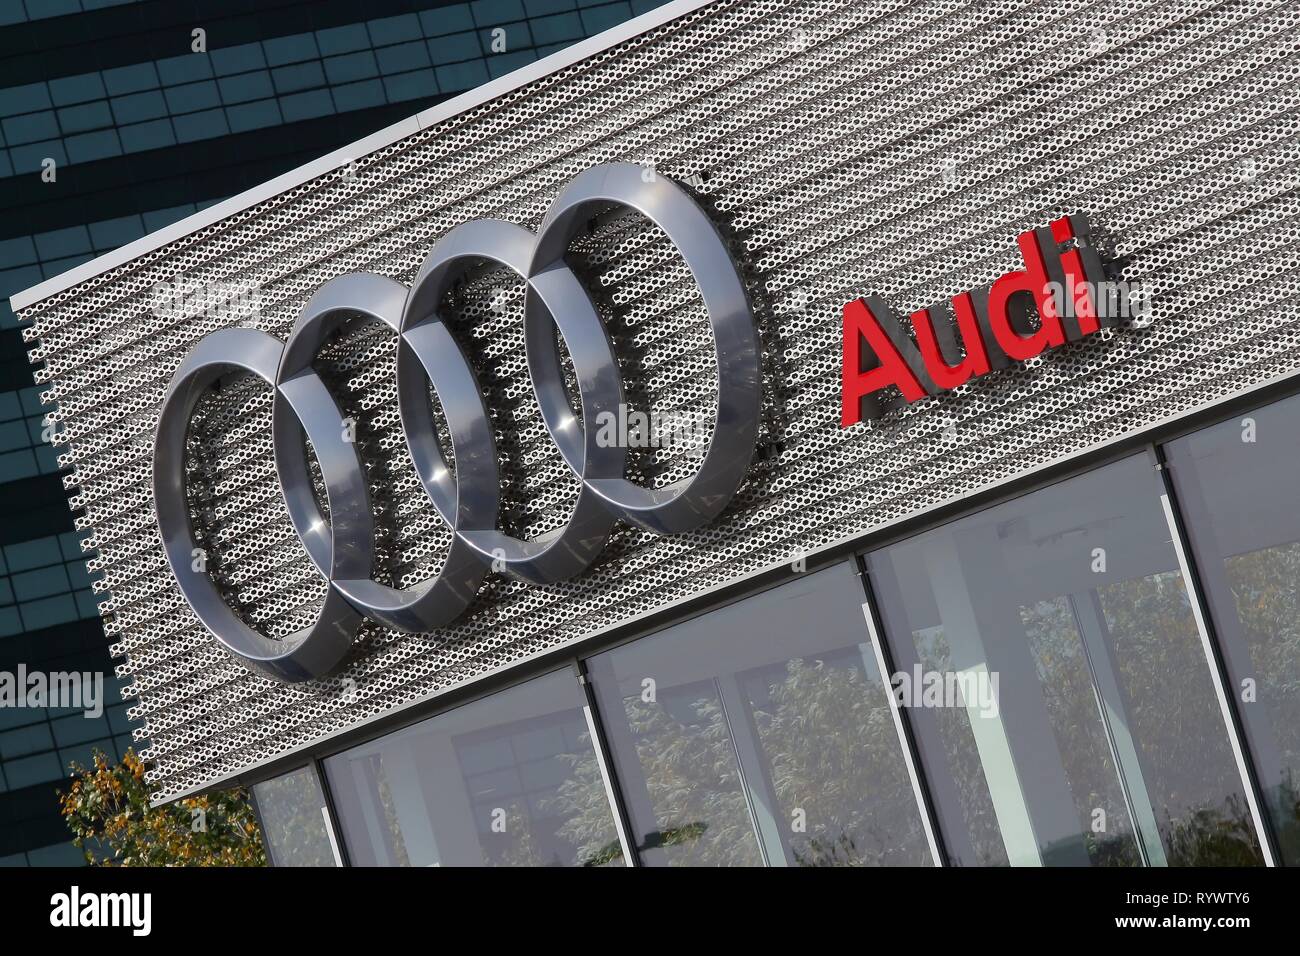 Bukarest, Rumänien - 17. Oktober 2018: Das Logo von Audi auto Marke ist auf einen Showroom in Bukarest, Rumänien gesehen. Dieses Bild ist nur für den redaktionellen Gebrauch bestimmt. Stockfoto